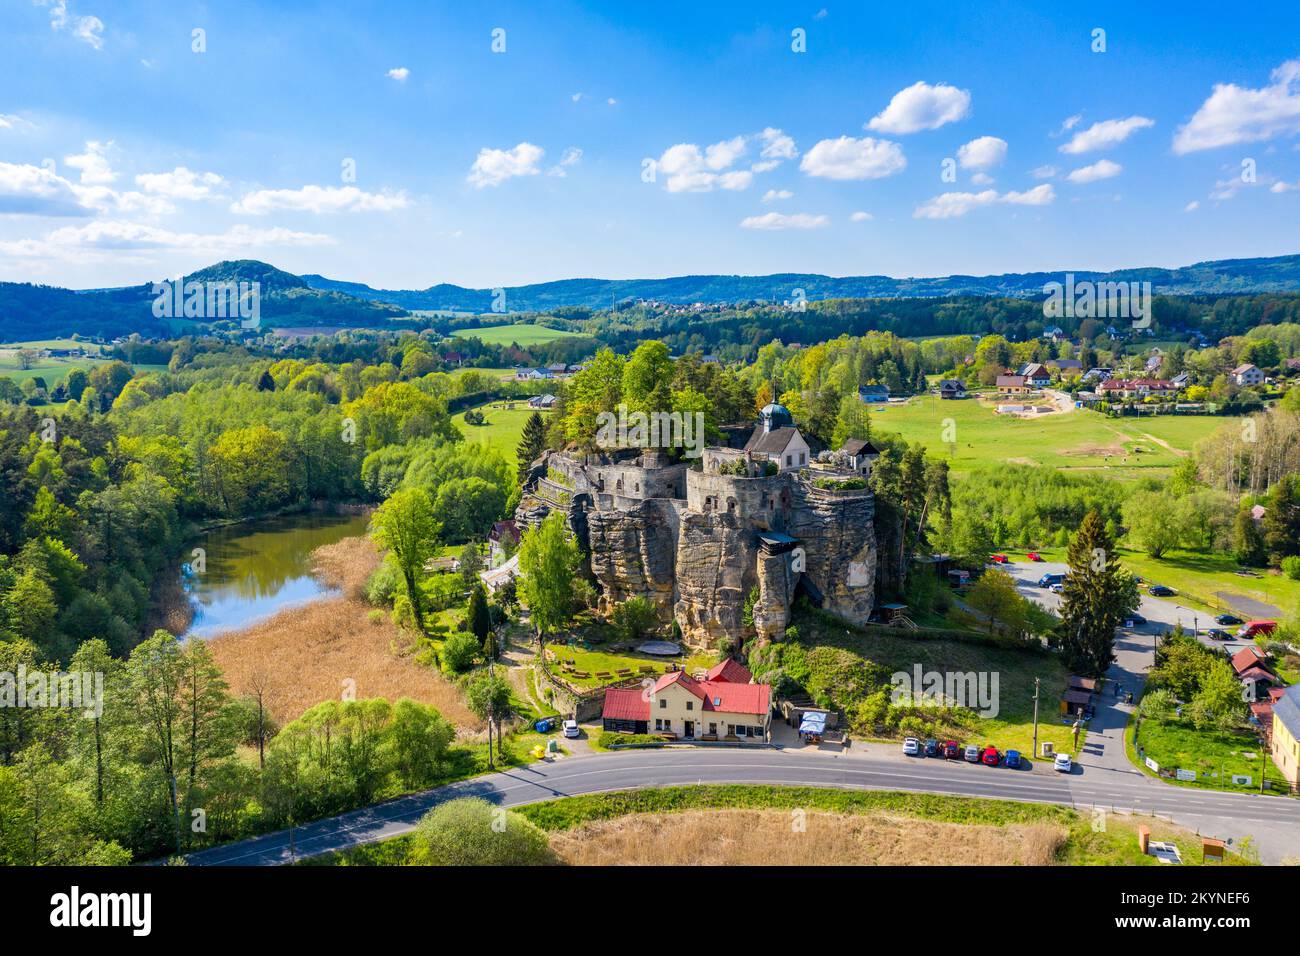 Luftaufnahme des Schlosses Sloup in Nordböhmen, Tschechien. Schloss Sloup in der kleinen Stadt Sloup V Cechach, in der Region Liberec, Nordböhmen Stockfoto